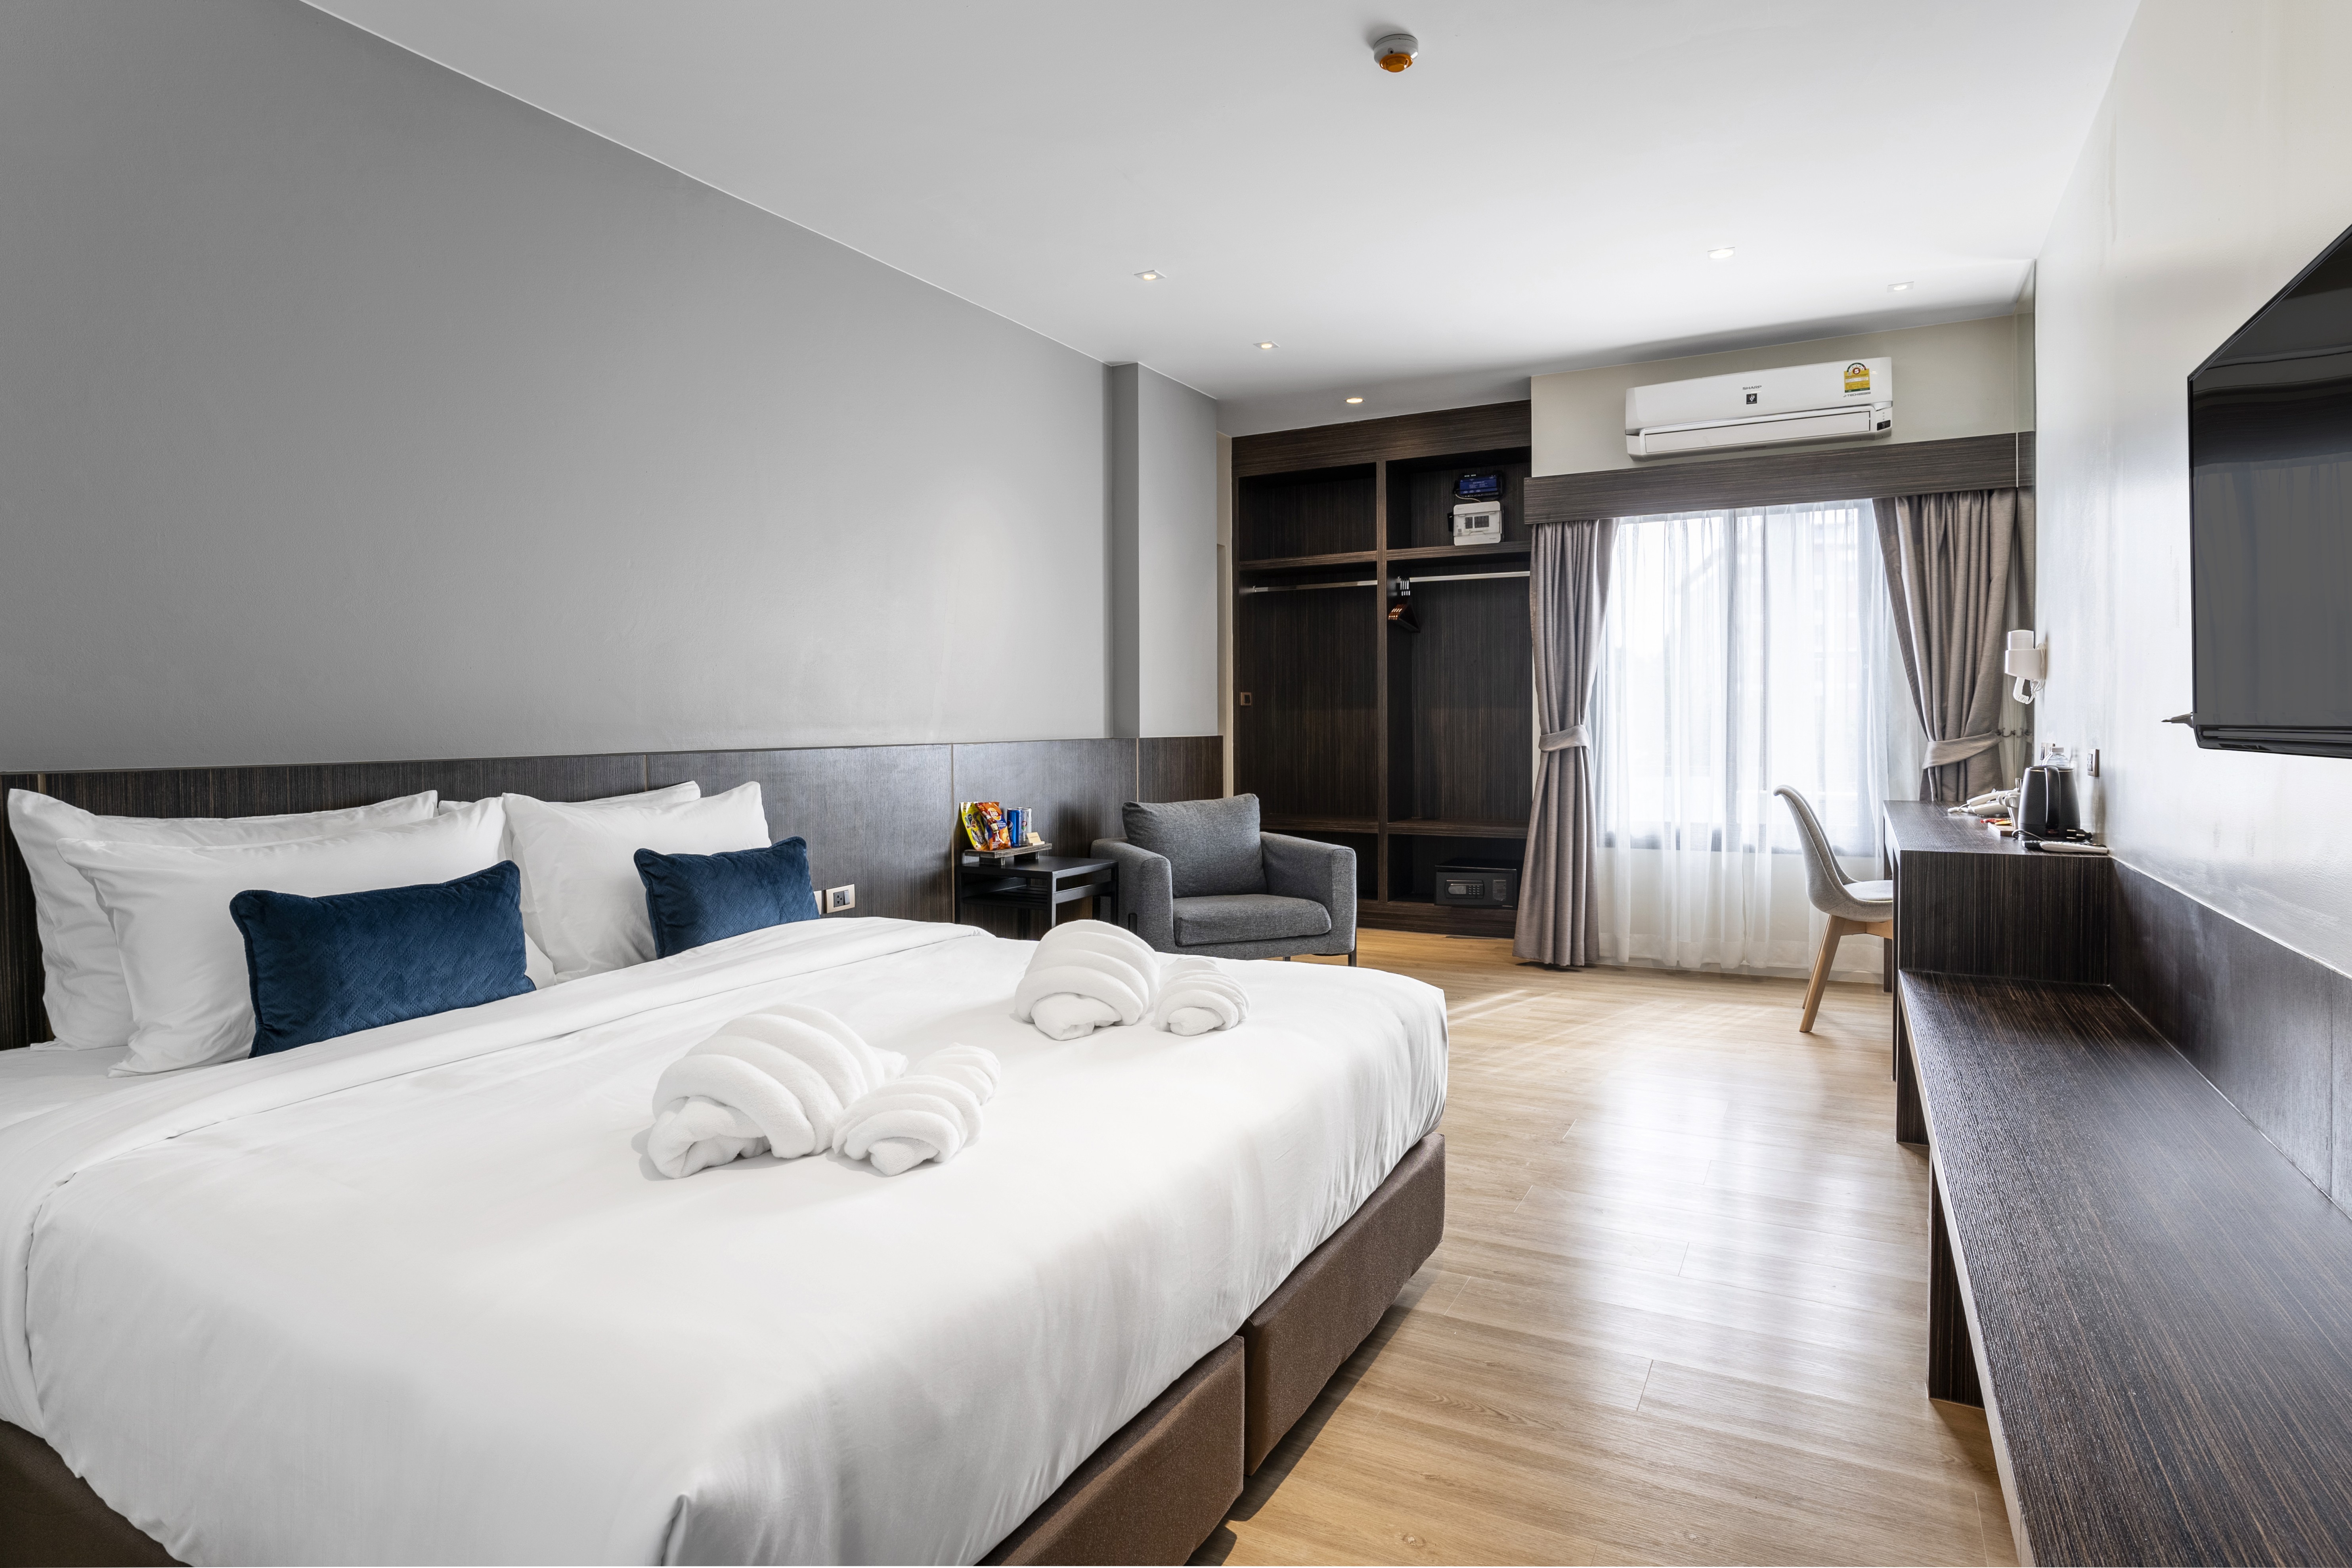 รีวิวโรงแรมโซเทล - โปรโมชั่นโรงแรม 3 ดาวในขอนแก่น | Trip.com